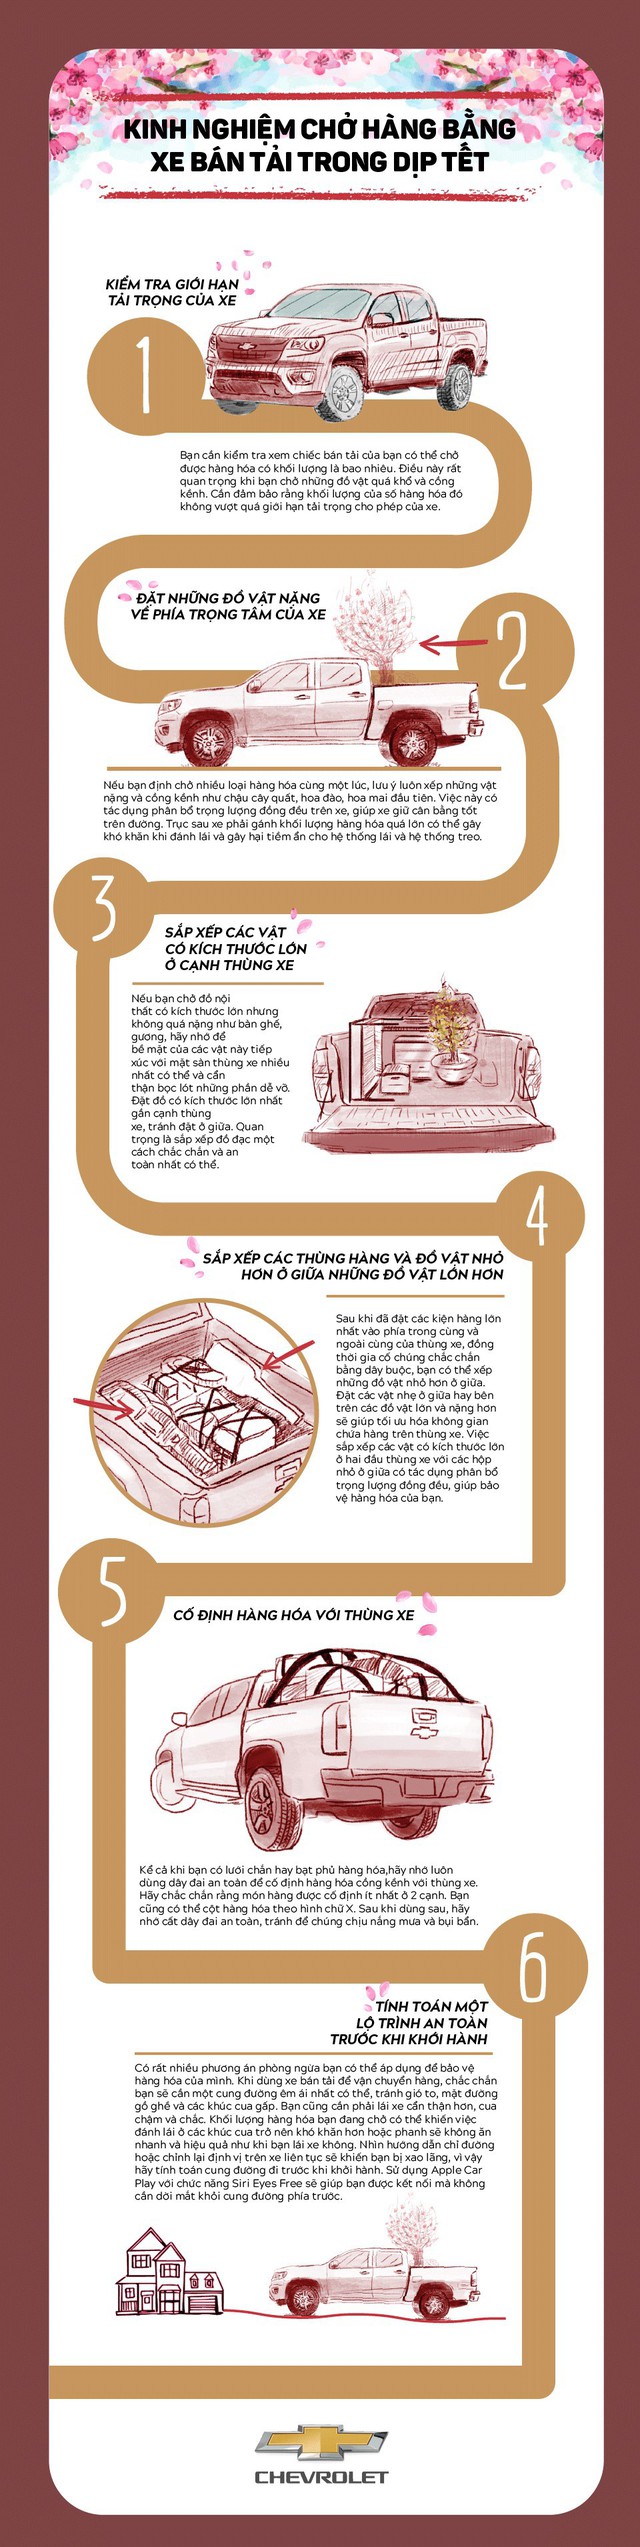 [Infographic] Kinh nghiệm chở hàng bằng xe bán tải trong dịp Tết Mậu Tuất - Ảnh 1.